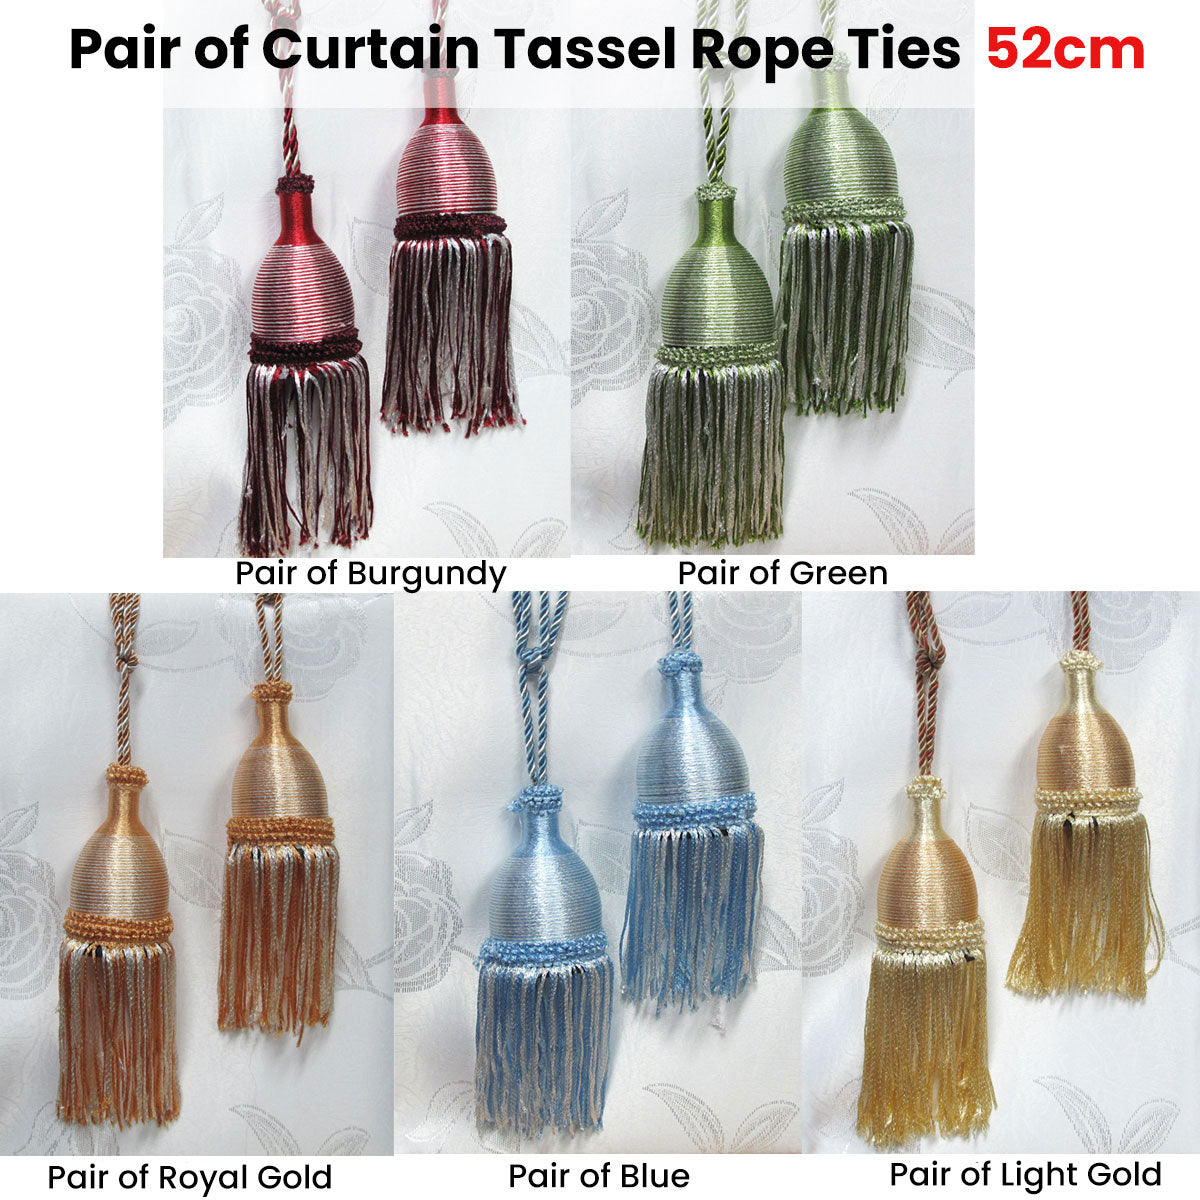 Pair of Curtain Tassel Rope Ties 52cm Royal Gold - SILBERSHELL